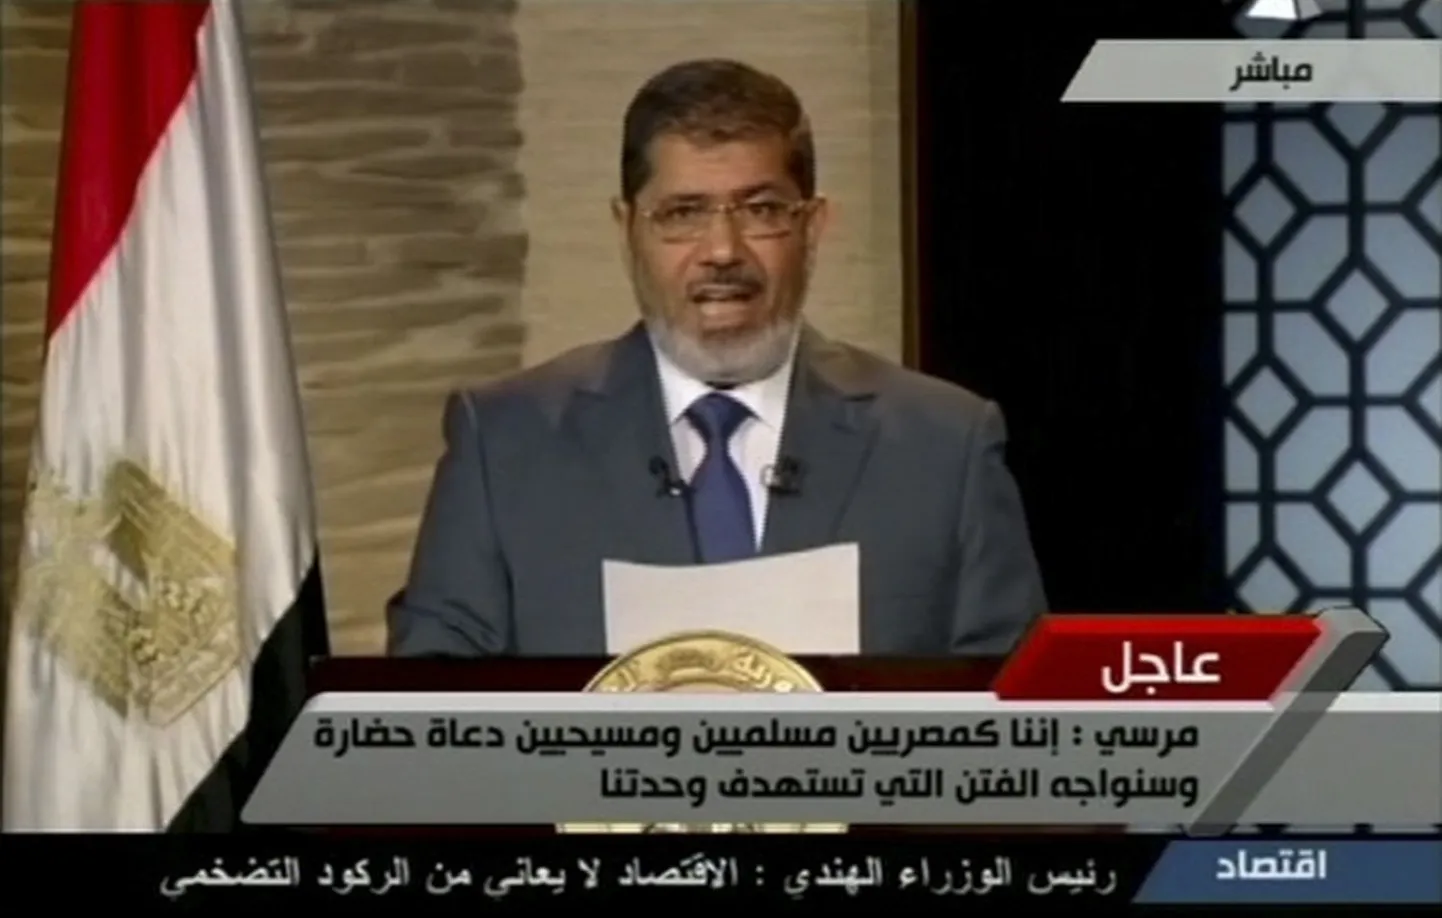 Новый президент Египта Мухаммед Мурси в своей первой речи после избрания поблагодарил «мучеников», отдавших свои жизни ради перемен в стране, и заявил, что «революция продолжается, пока не выполнены все ее цели».